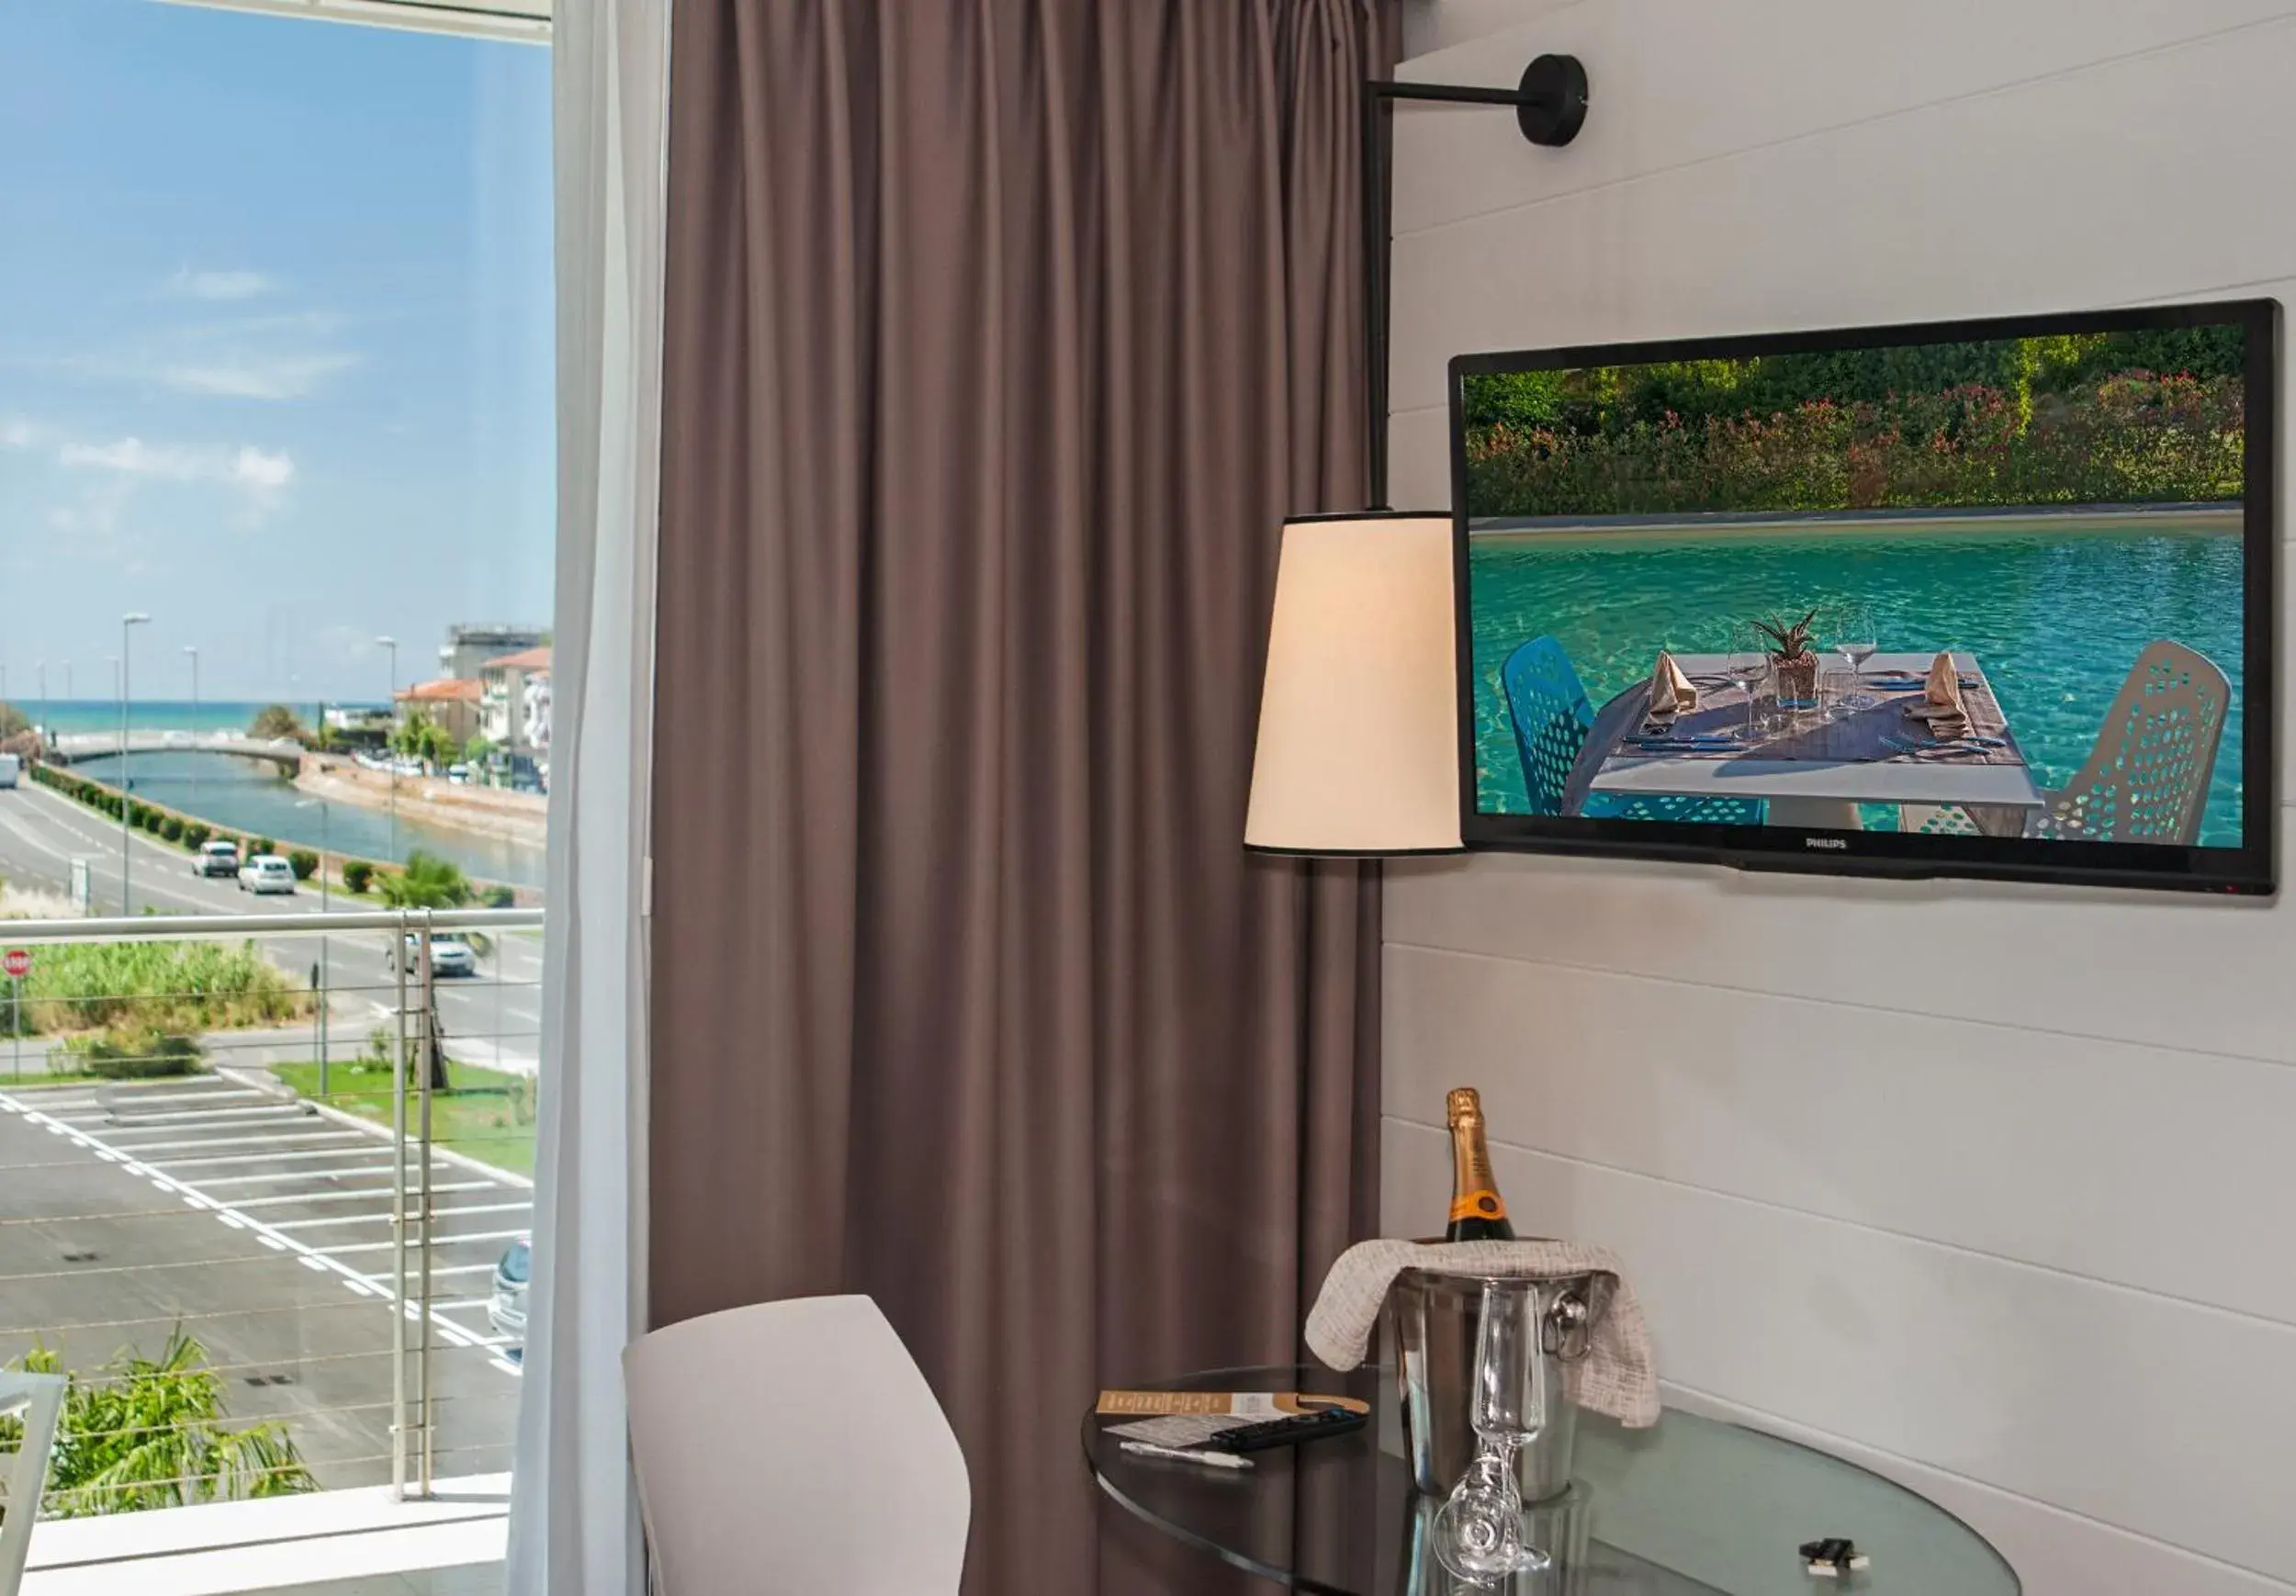 TV and multimedia, Pool View in Hotel Viareggio